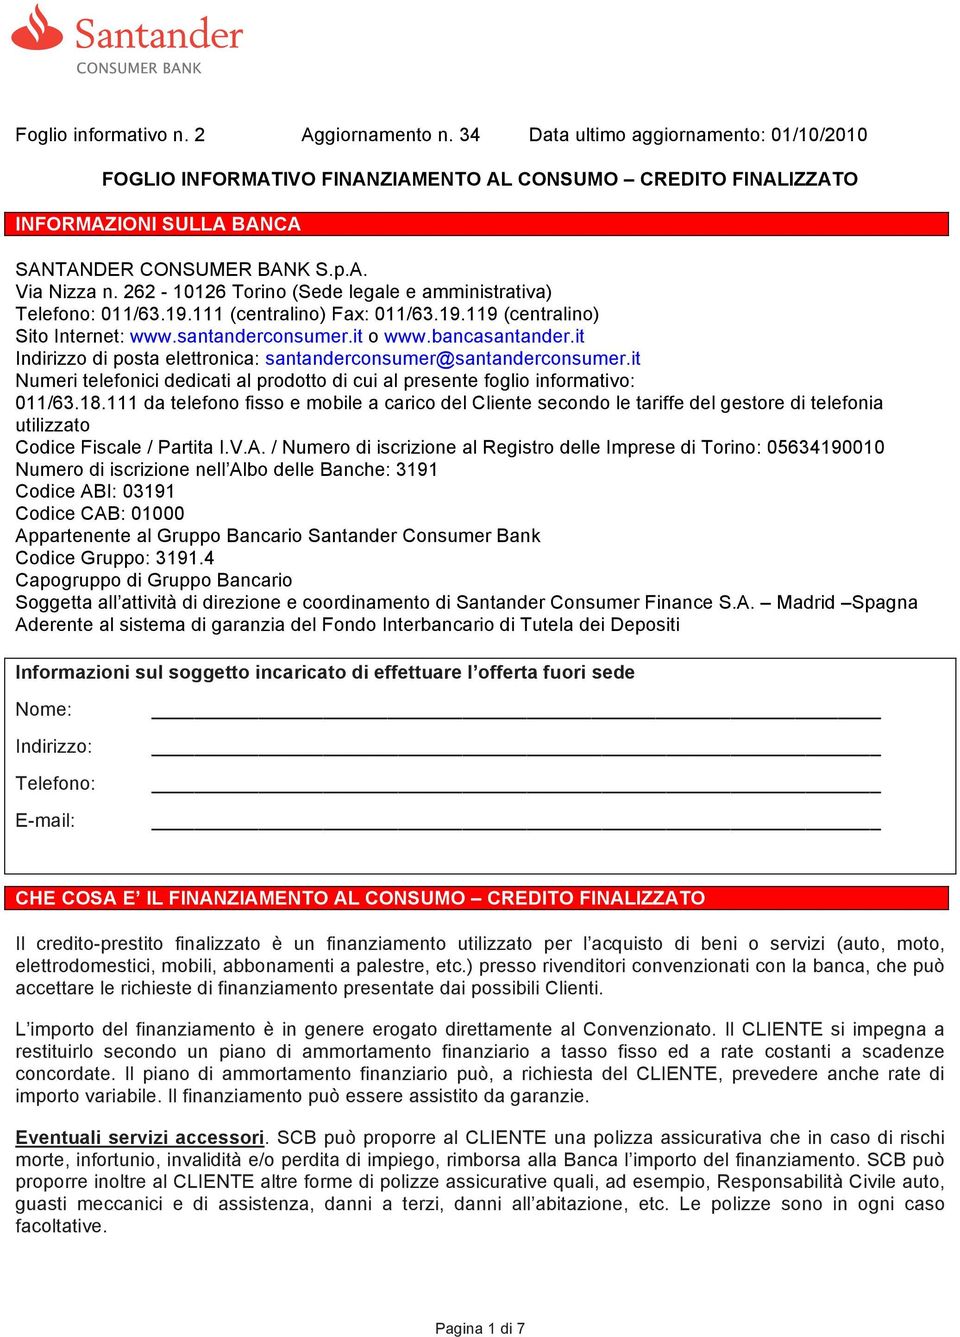 262-10126 Torino (Sede legale e amministrativa) Telefono: 011/63.19.111 (centralino) Fax: 011/63.19.119 (centralino) Sito Internet: www.santanderconsumer.it o www.bancasantander.